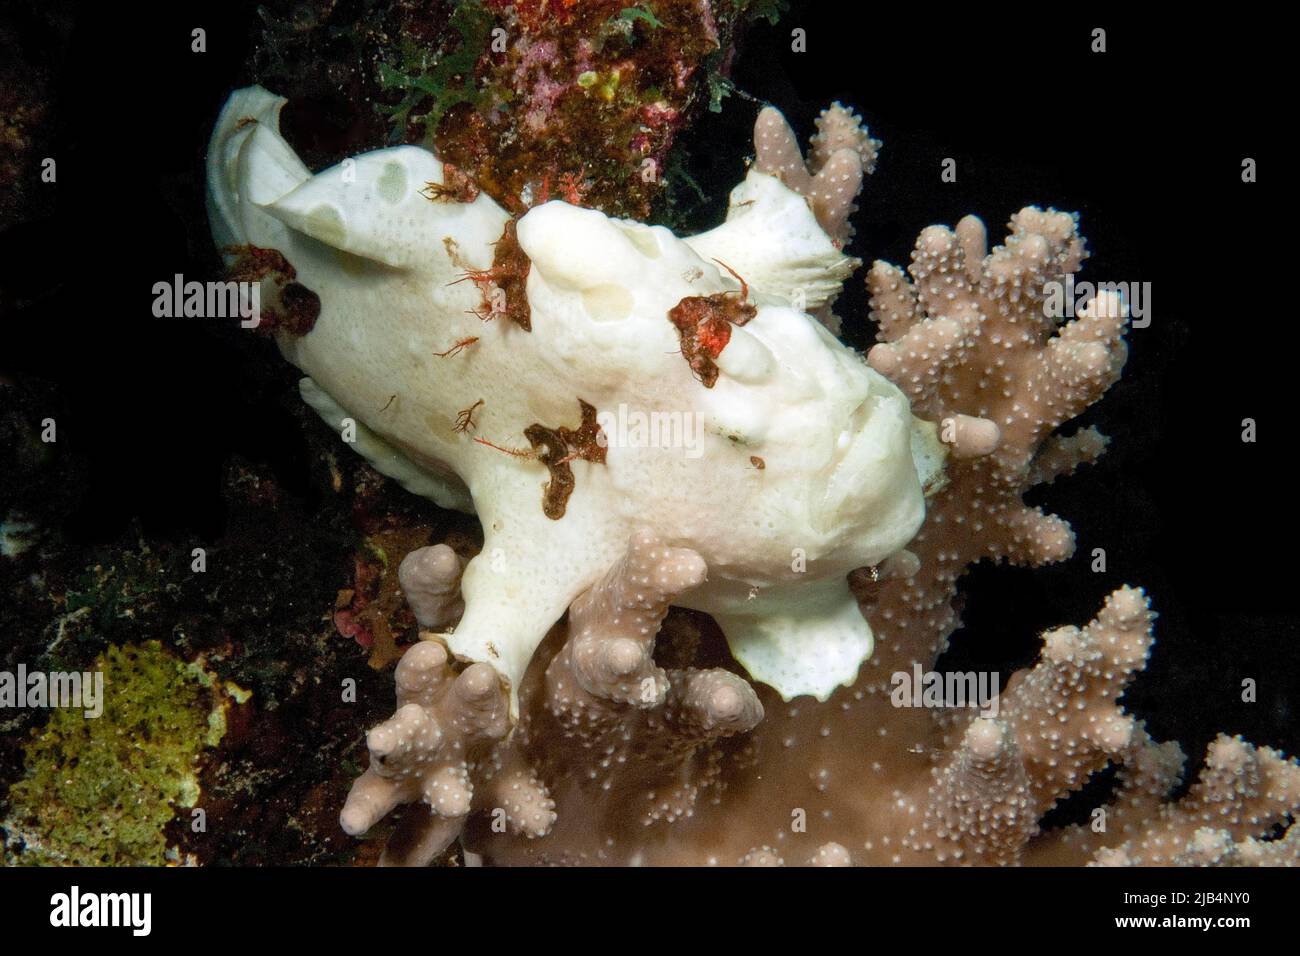 Rana paintata giovanile (Antennarius pictus) appoggiata su coralli di pietra di Agropora (Agroporidae), Oceano Pacifico, Mar delle Filippine Foto Stock